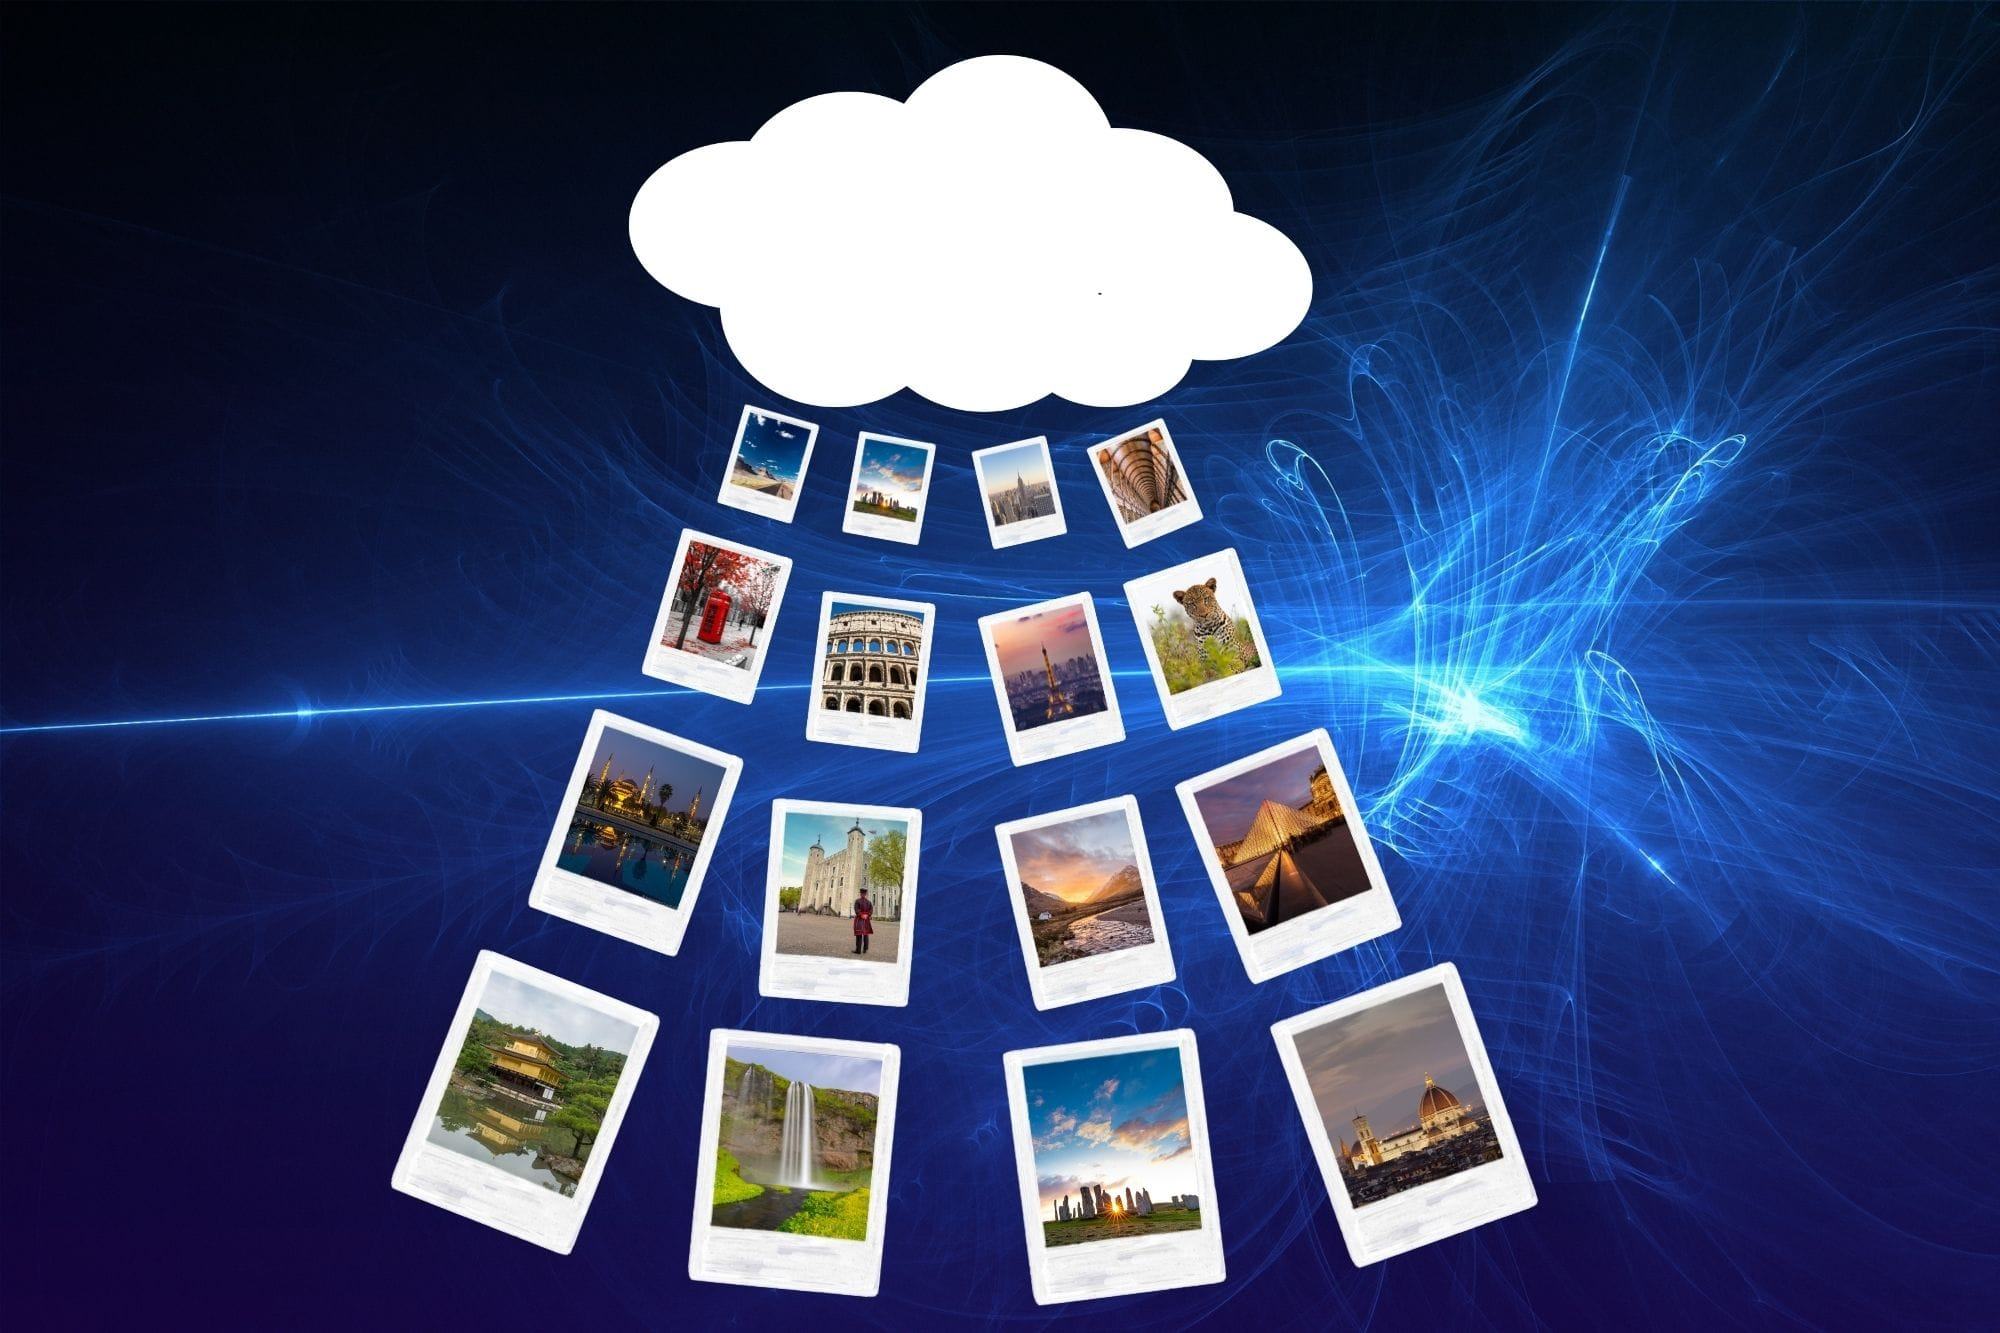 Copia de seguridad de fotos en la nube